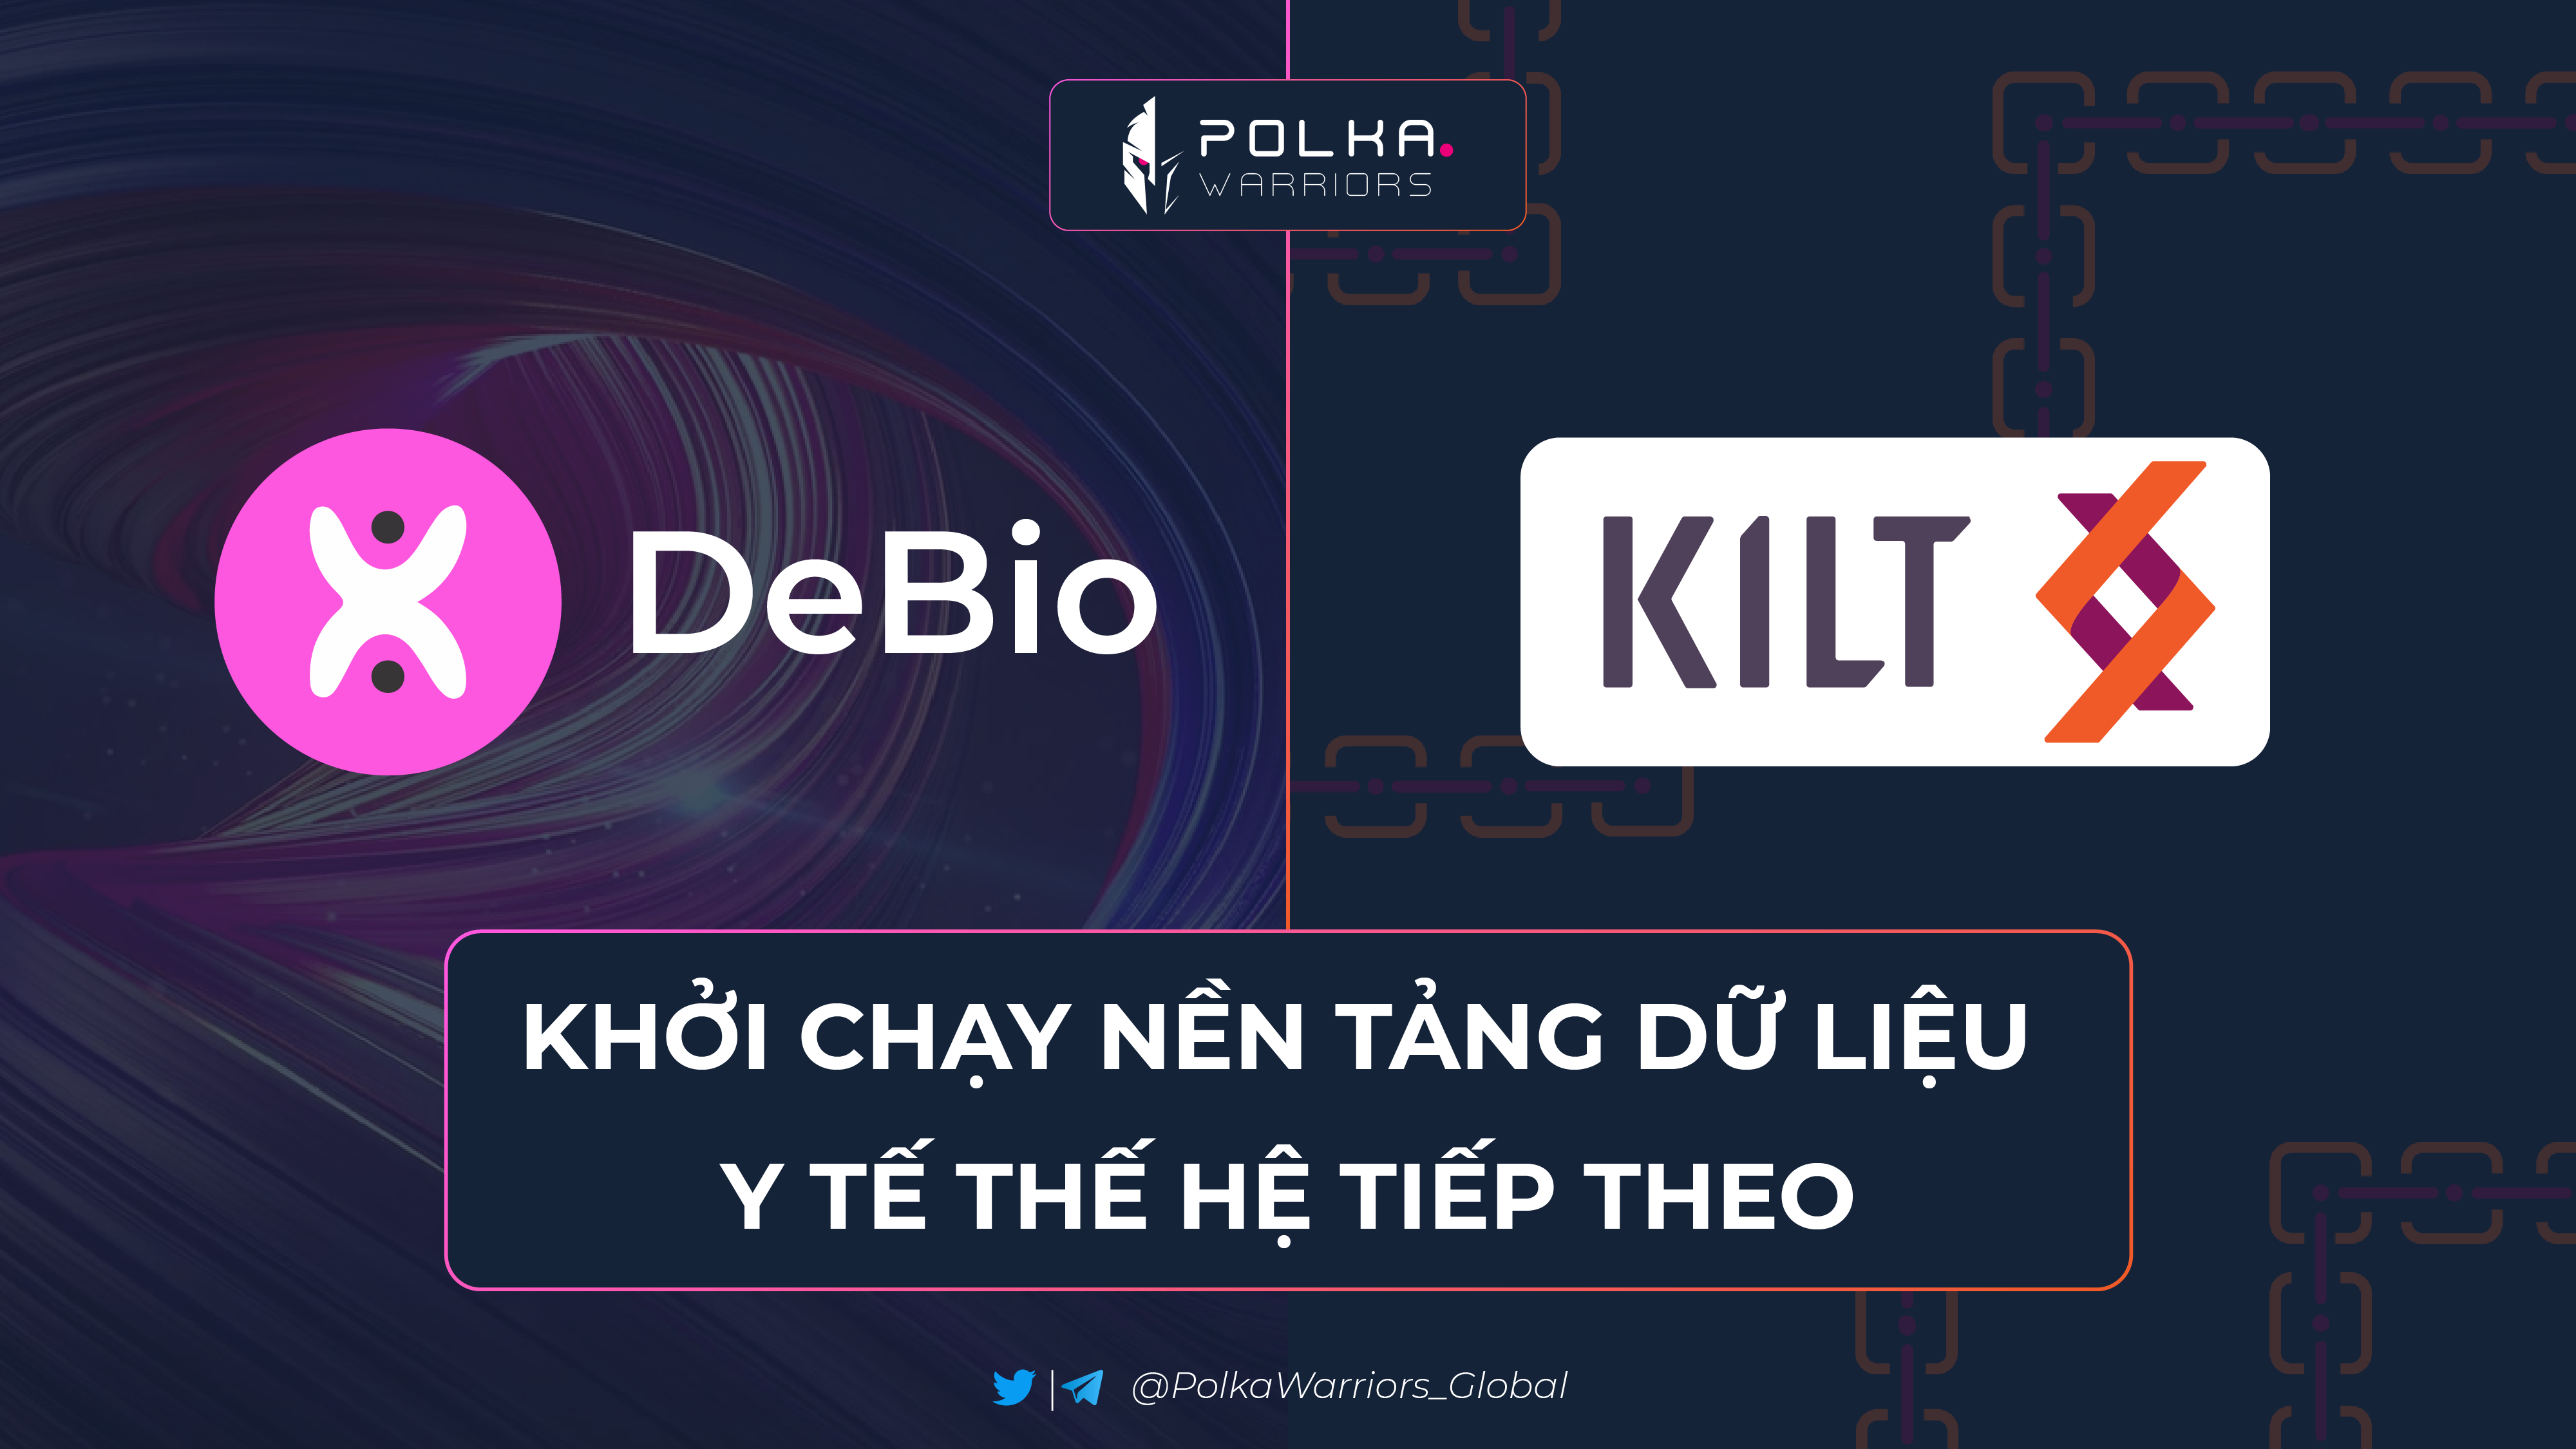 DeBio hợp tác với KILT Protocol, khởi chạy nền tảng dữ liệu y tế thế hệ tiếp theo - syndicator - Polkawarriors